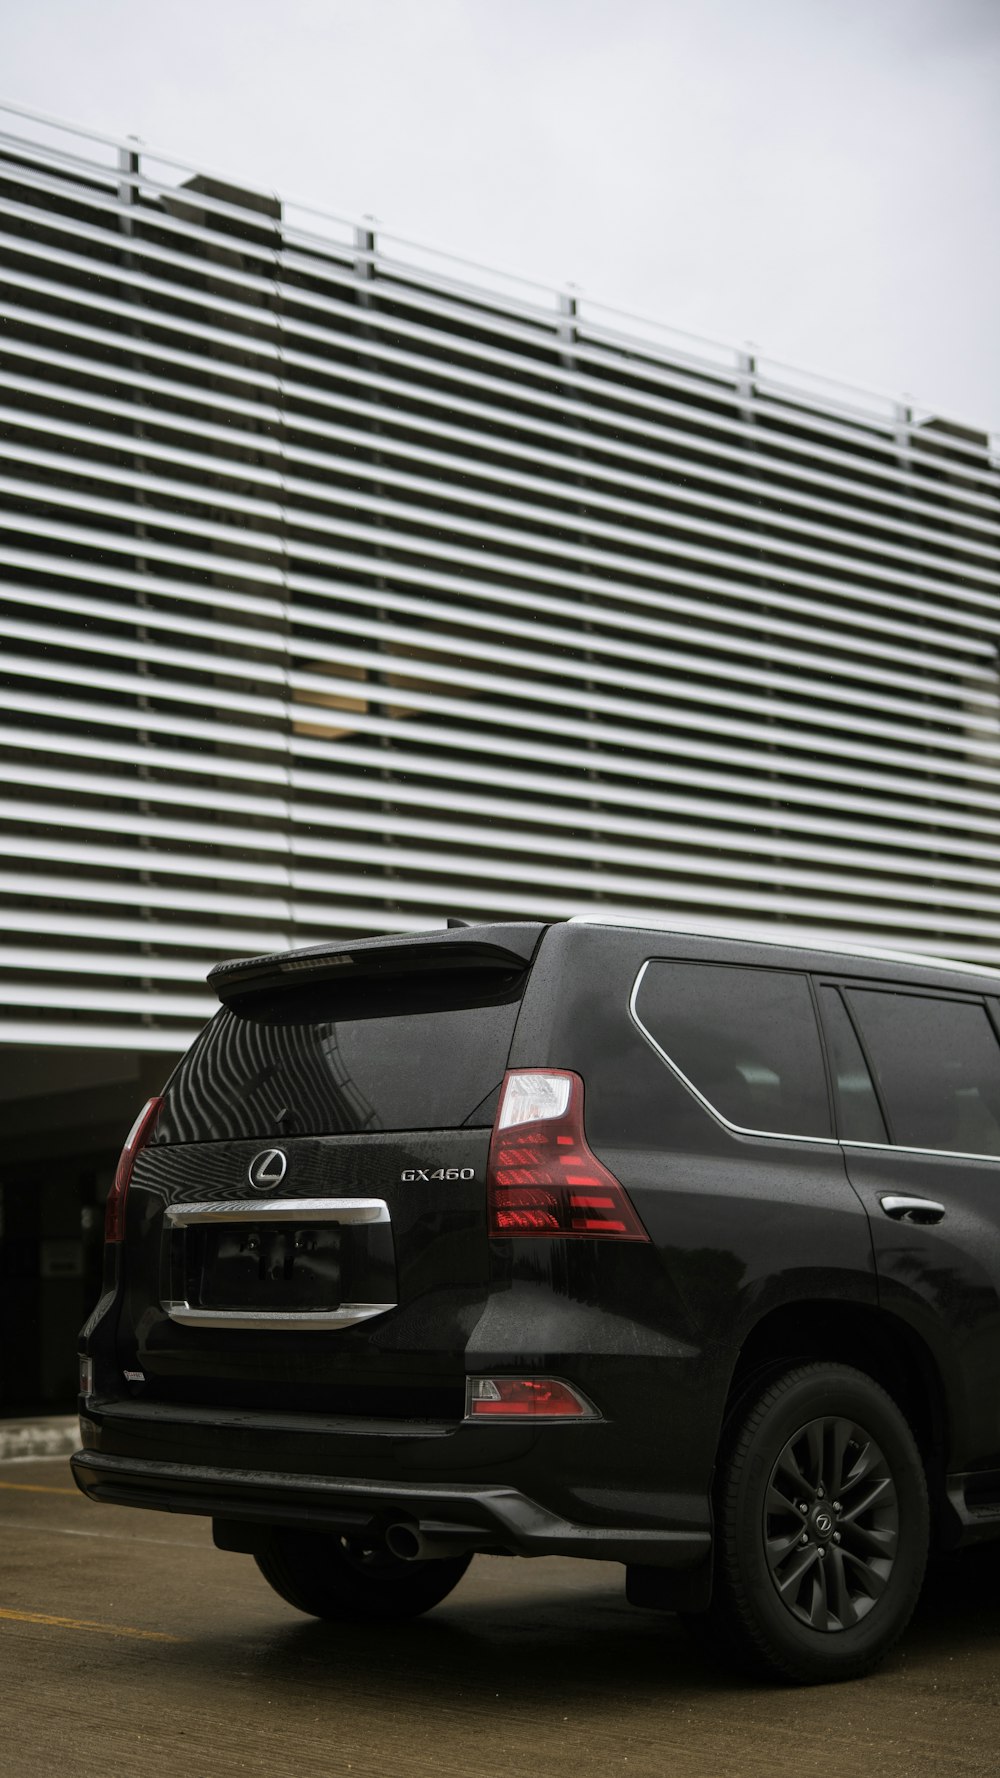 Un SUV noir garé devant un immeuble